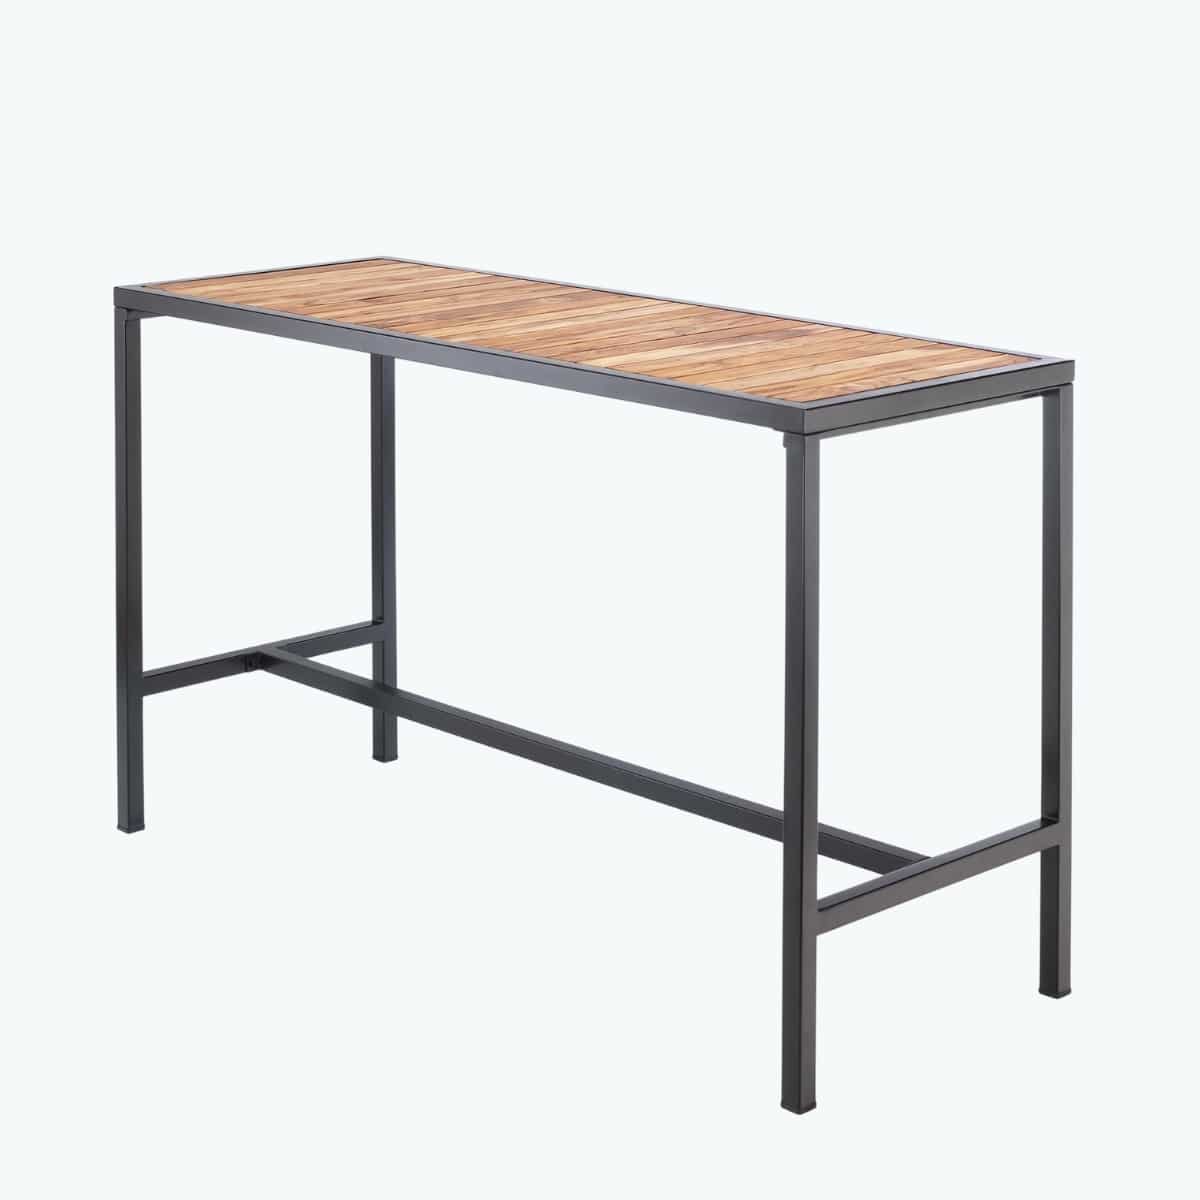 Esplanade Bar Table - 1800 x 700